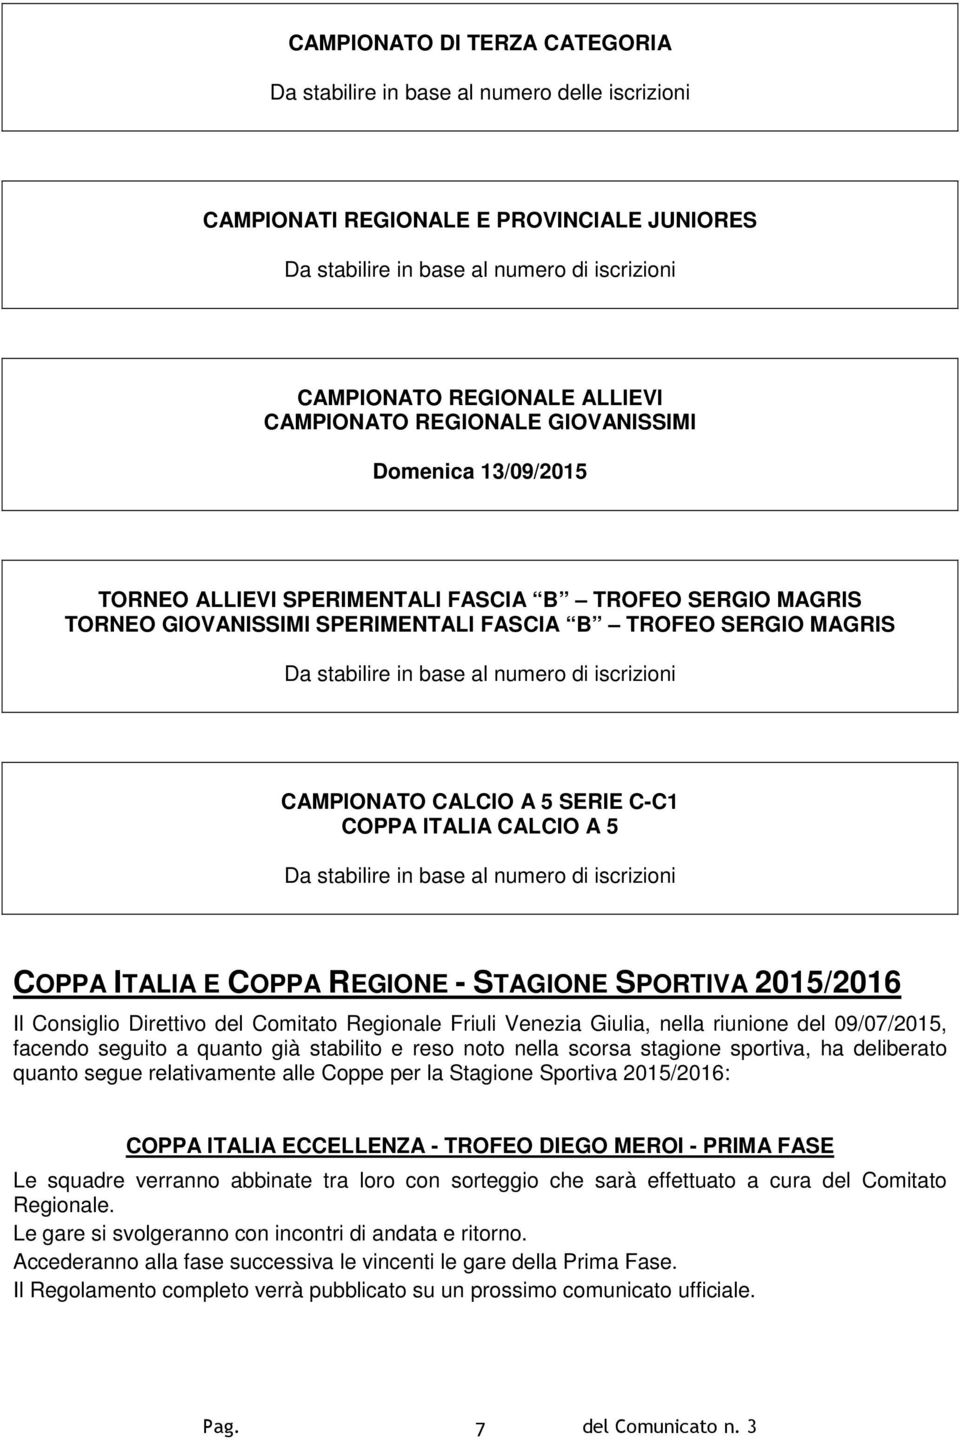 numero di iscrizioni CAMPIONATO CALCIO A 5 SERIE C-C1 COPPA ITALIA CALCIO A 5 Da stabilire in base al numero di iscrizioni COPPA ITALIA E COPPA REGIONE - STAGIONE SPORTIVA 2015/2016 Il Consiglio